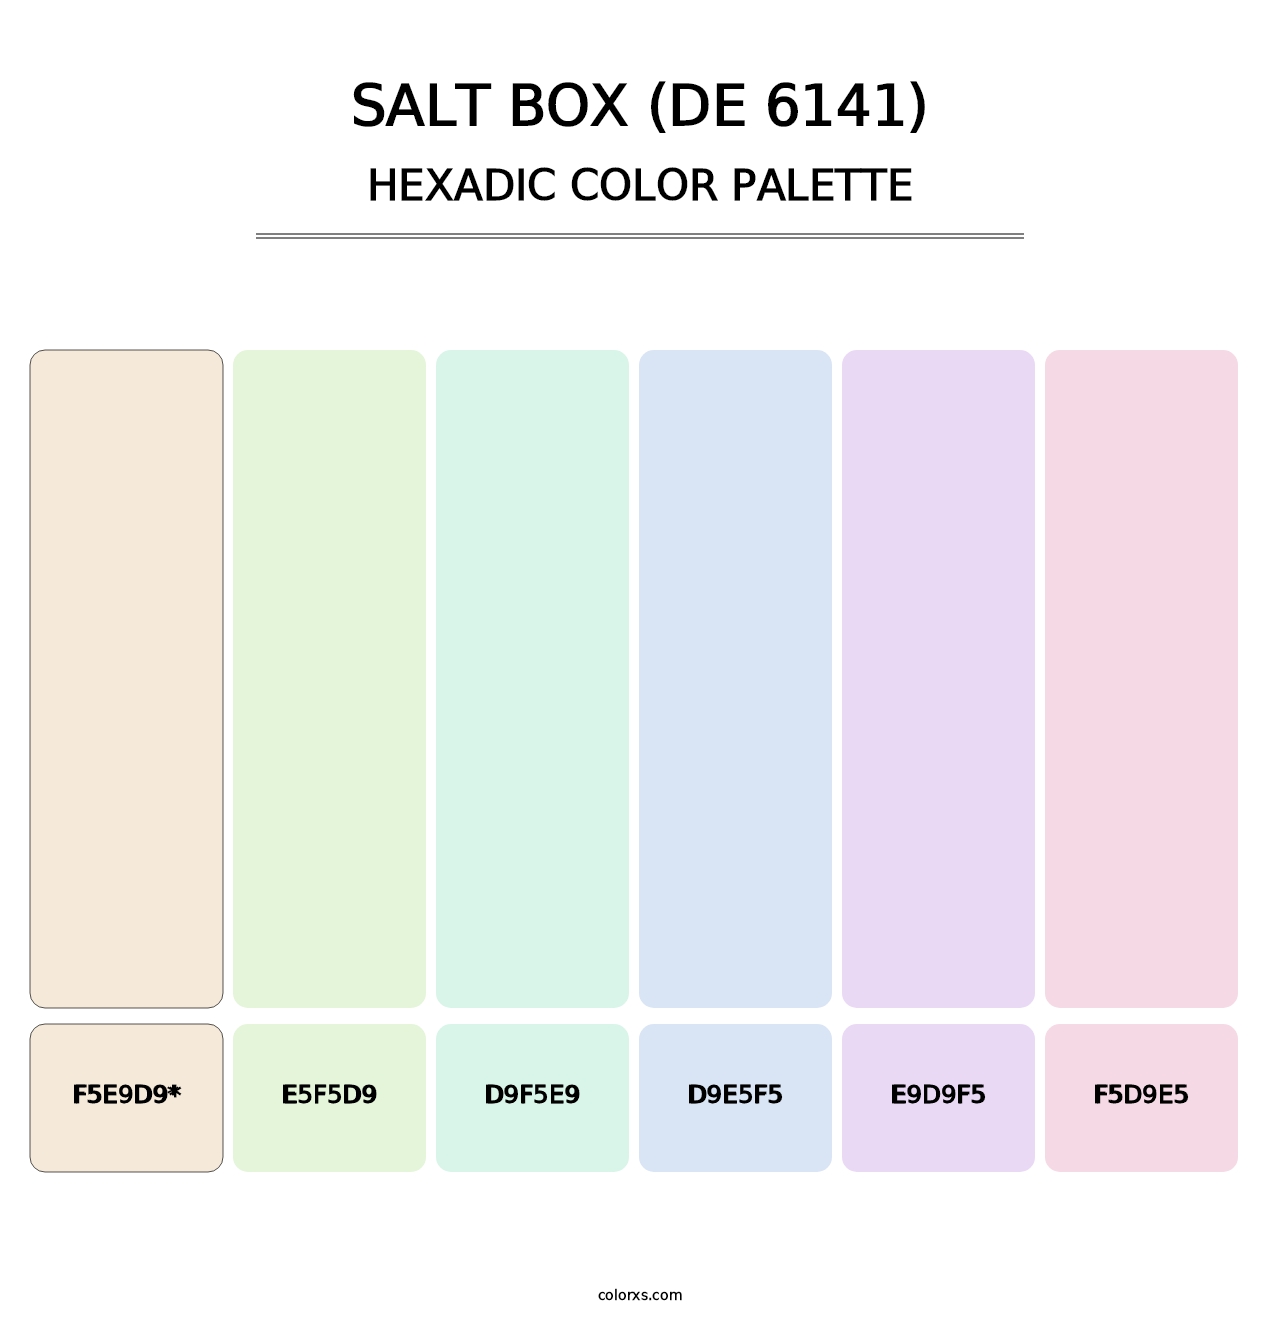 Salt Box (DE 6141) - Hexadic Color Palette